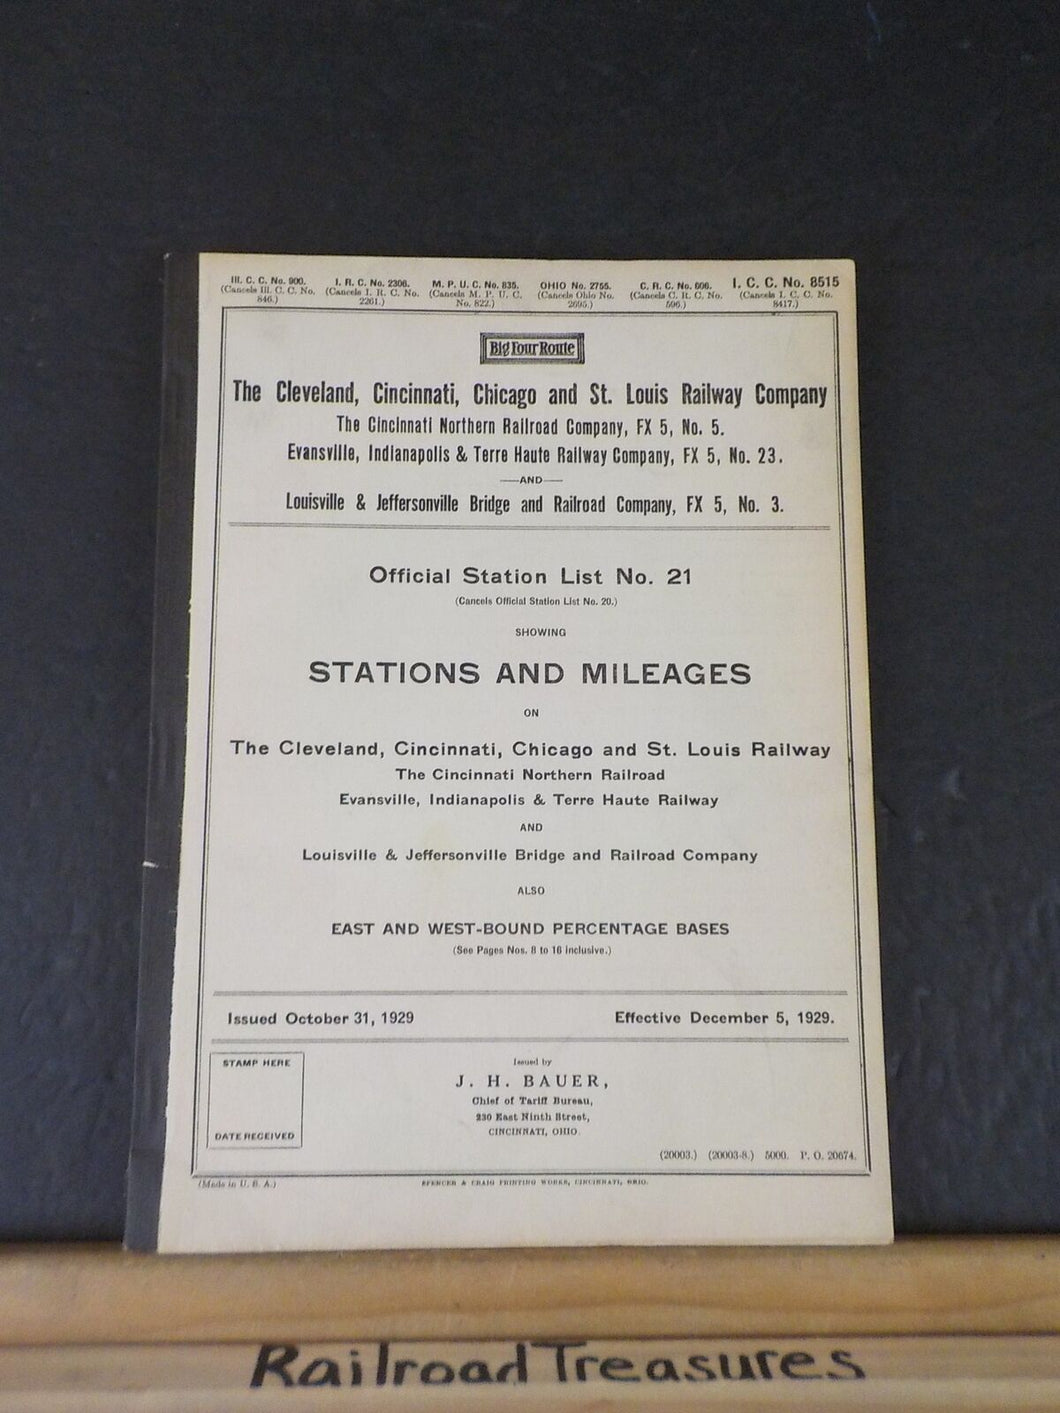 CCC&StL Cincinnati Northern EI&TH L&JB Official Station List #21 1929